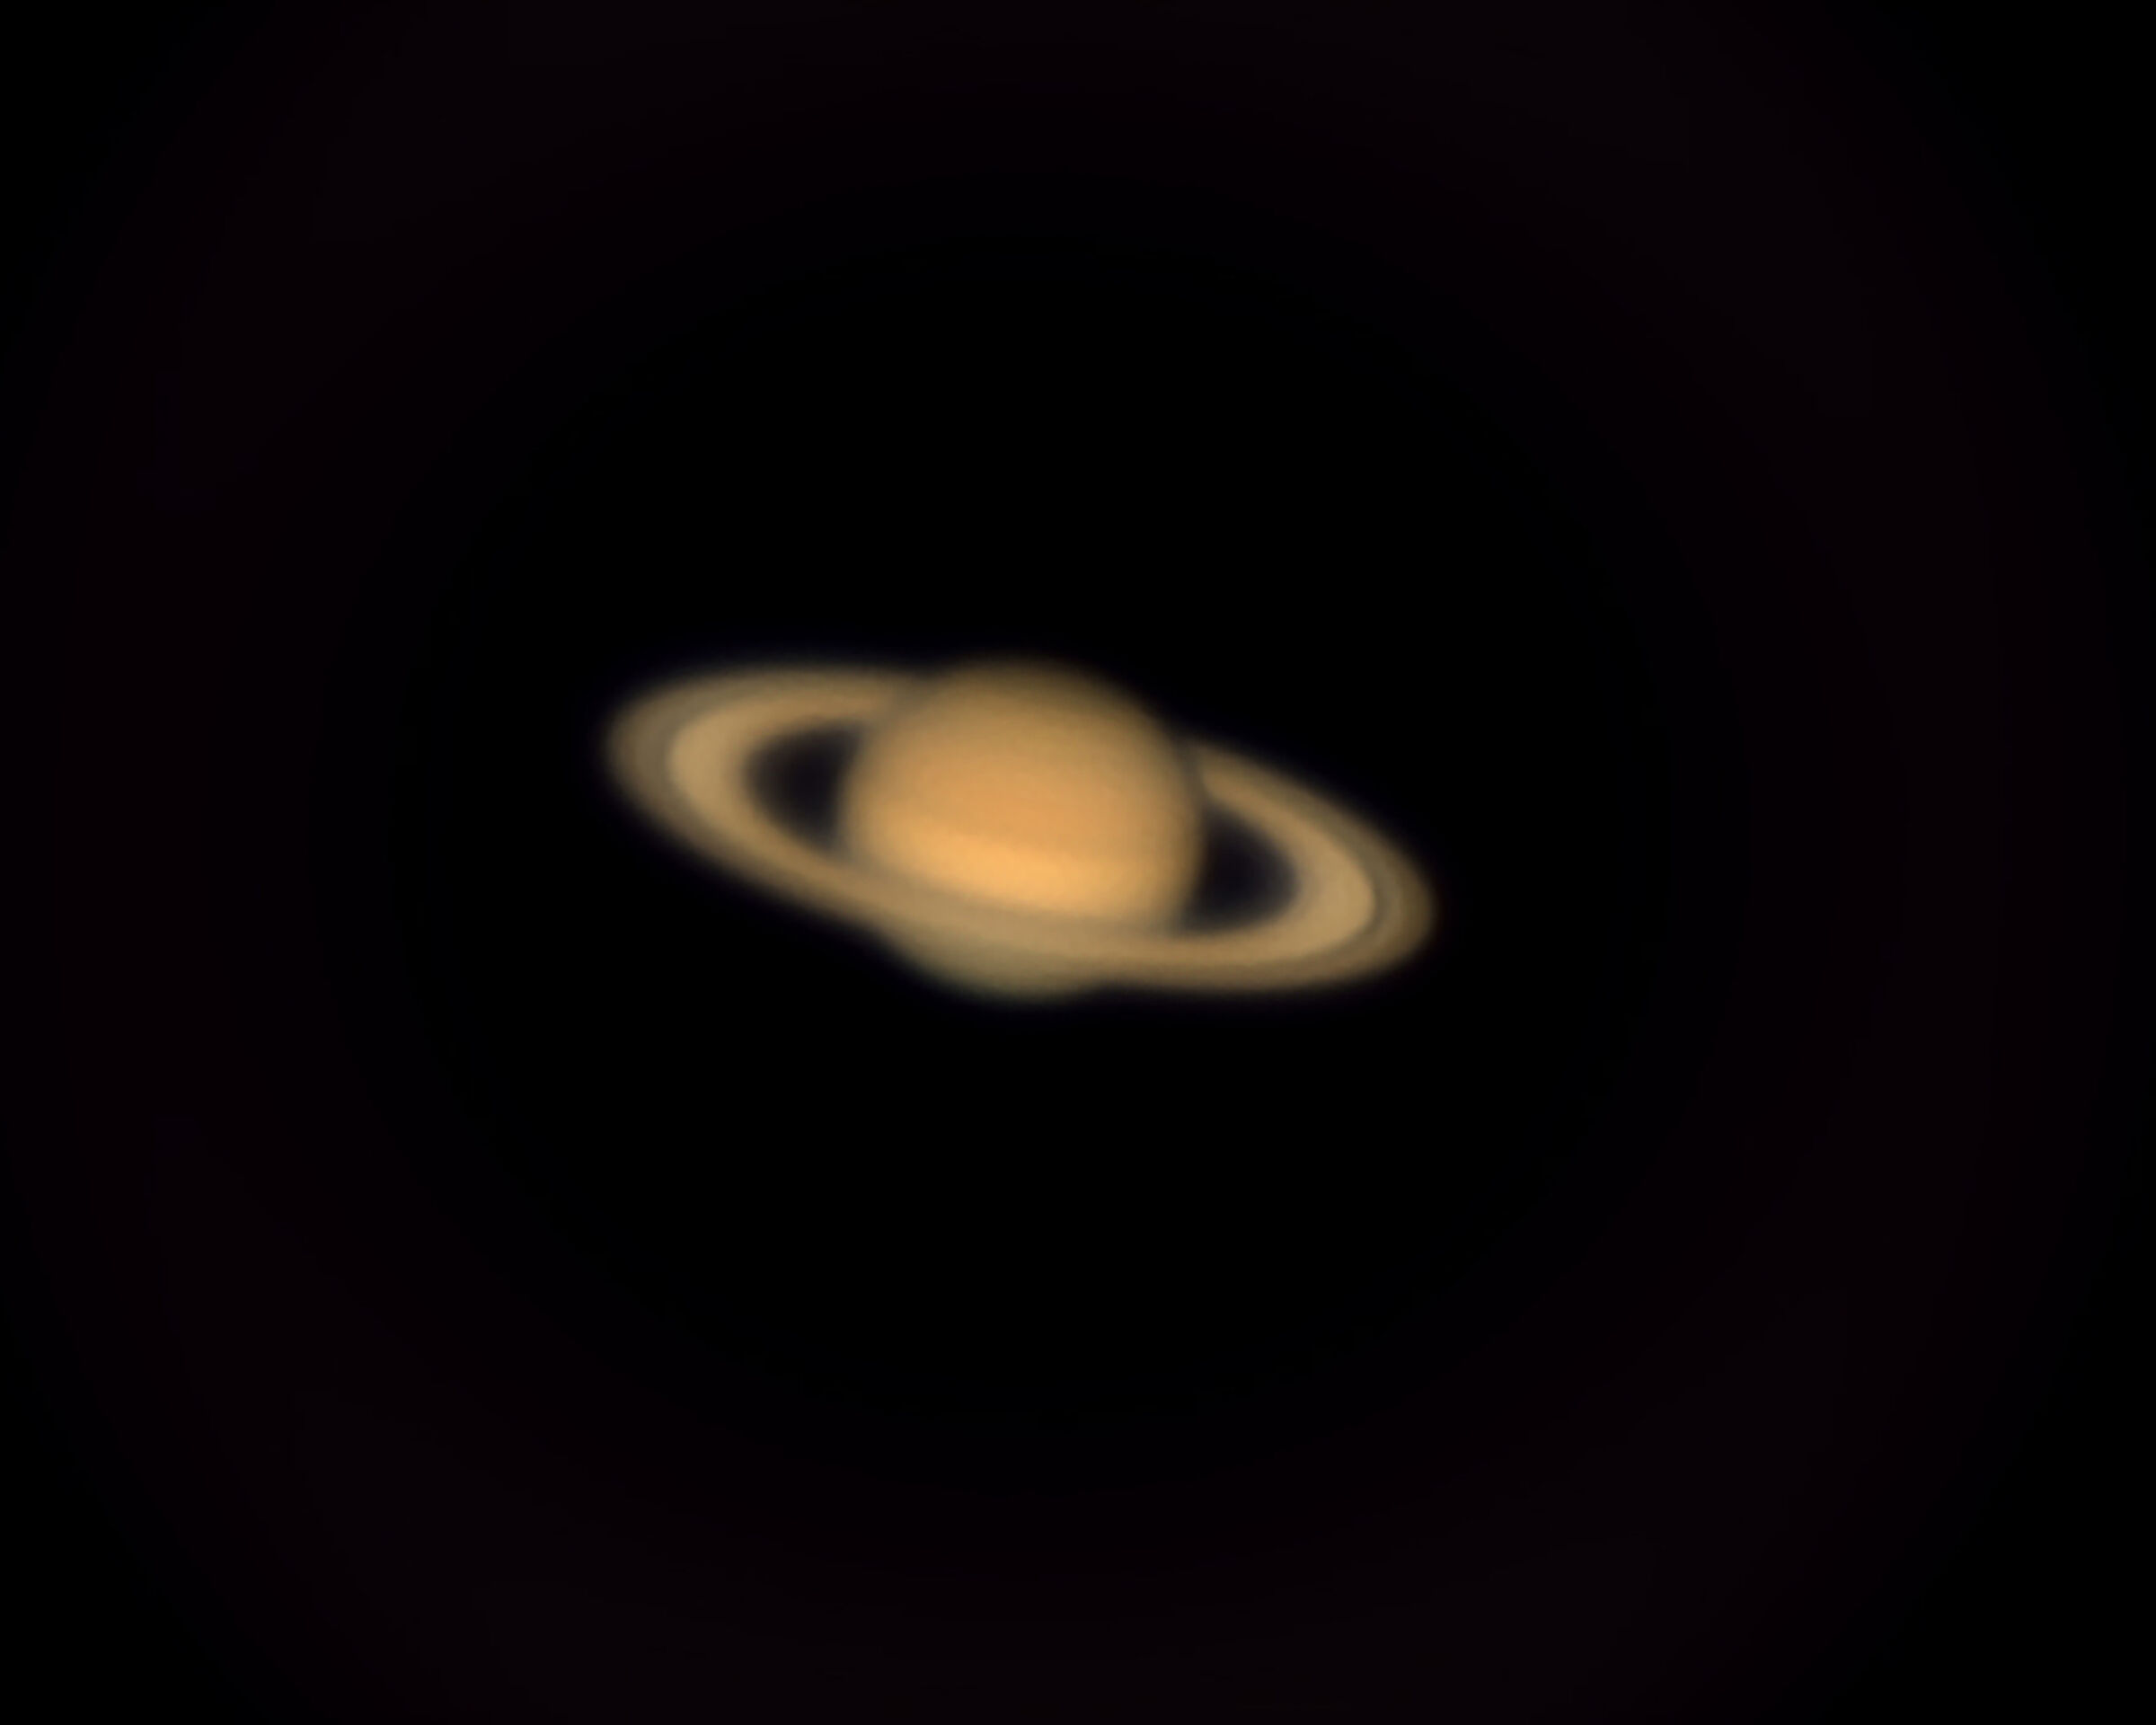 Saturno in tutto il suo splendore (rivisitato ... !)...